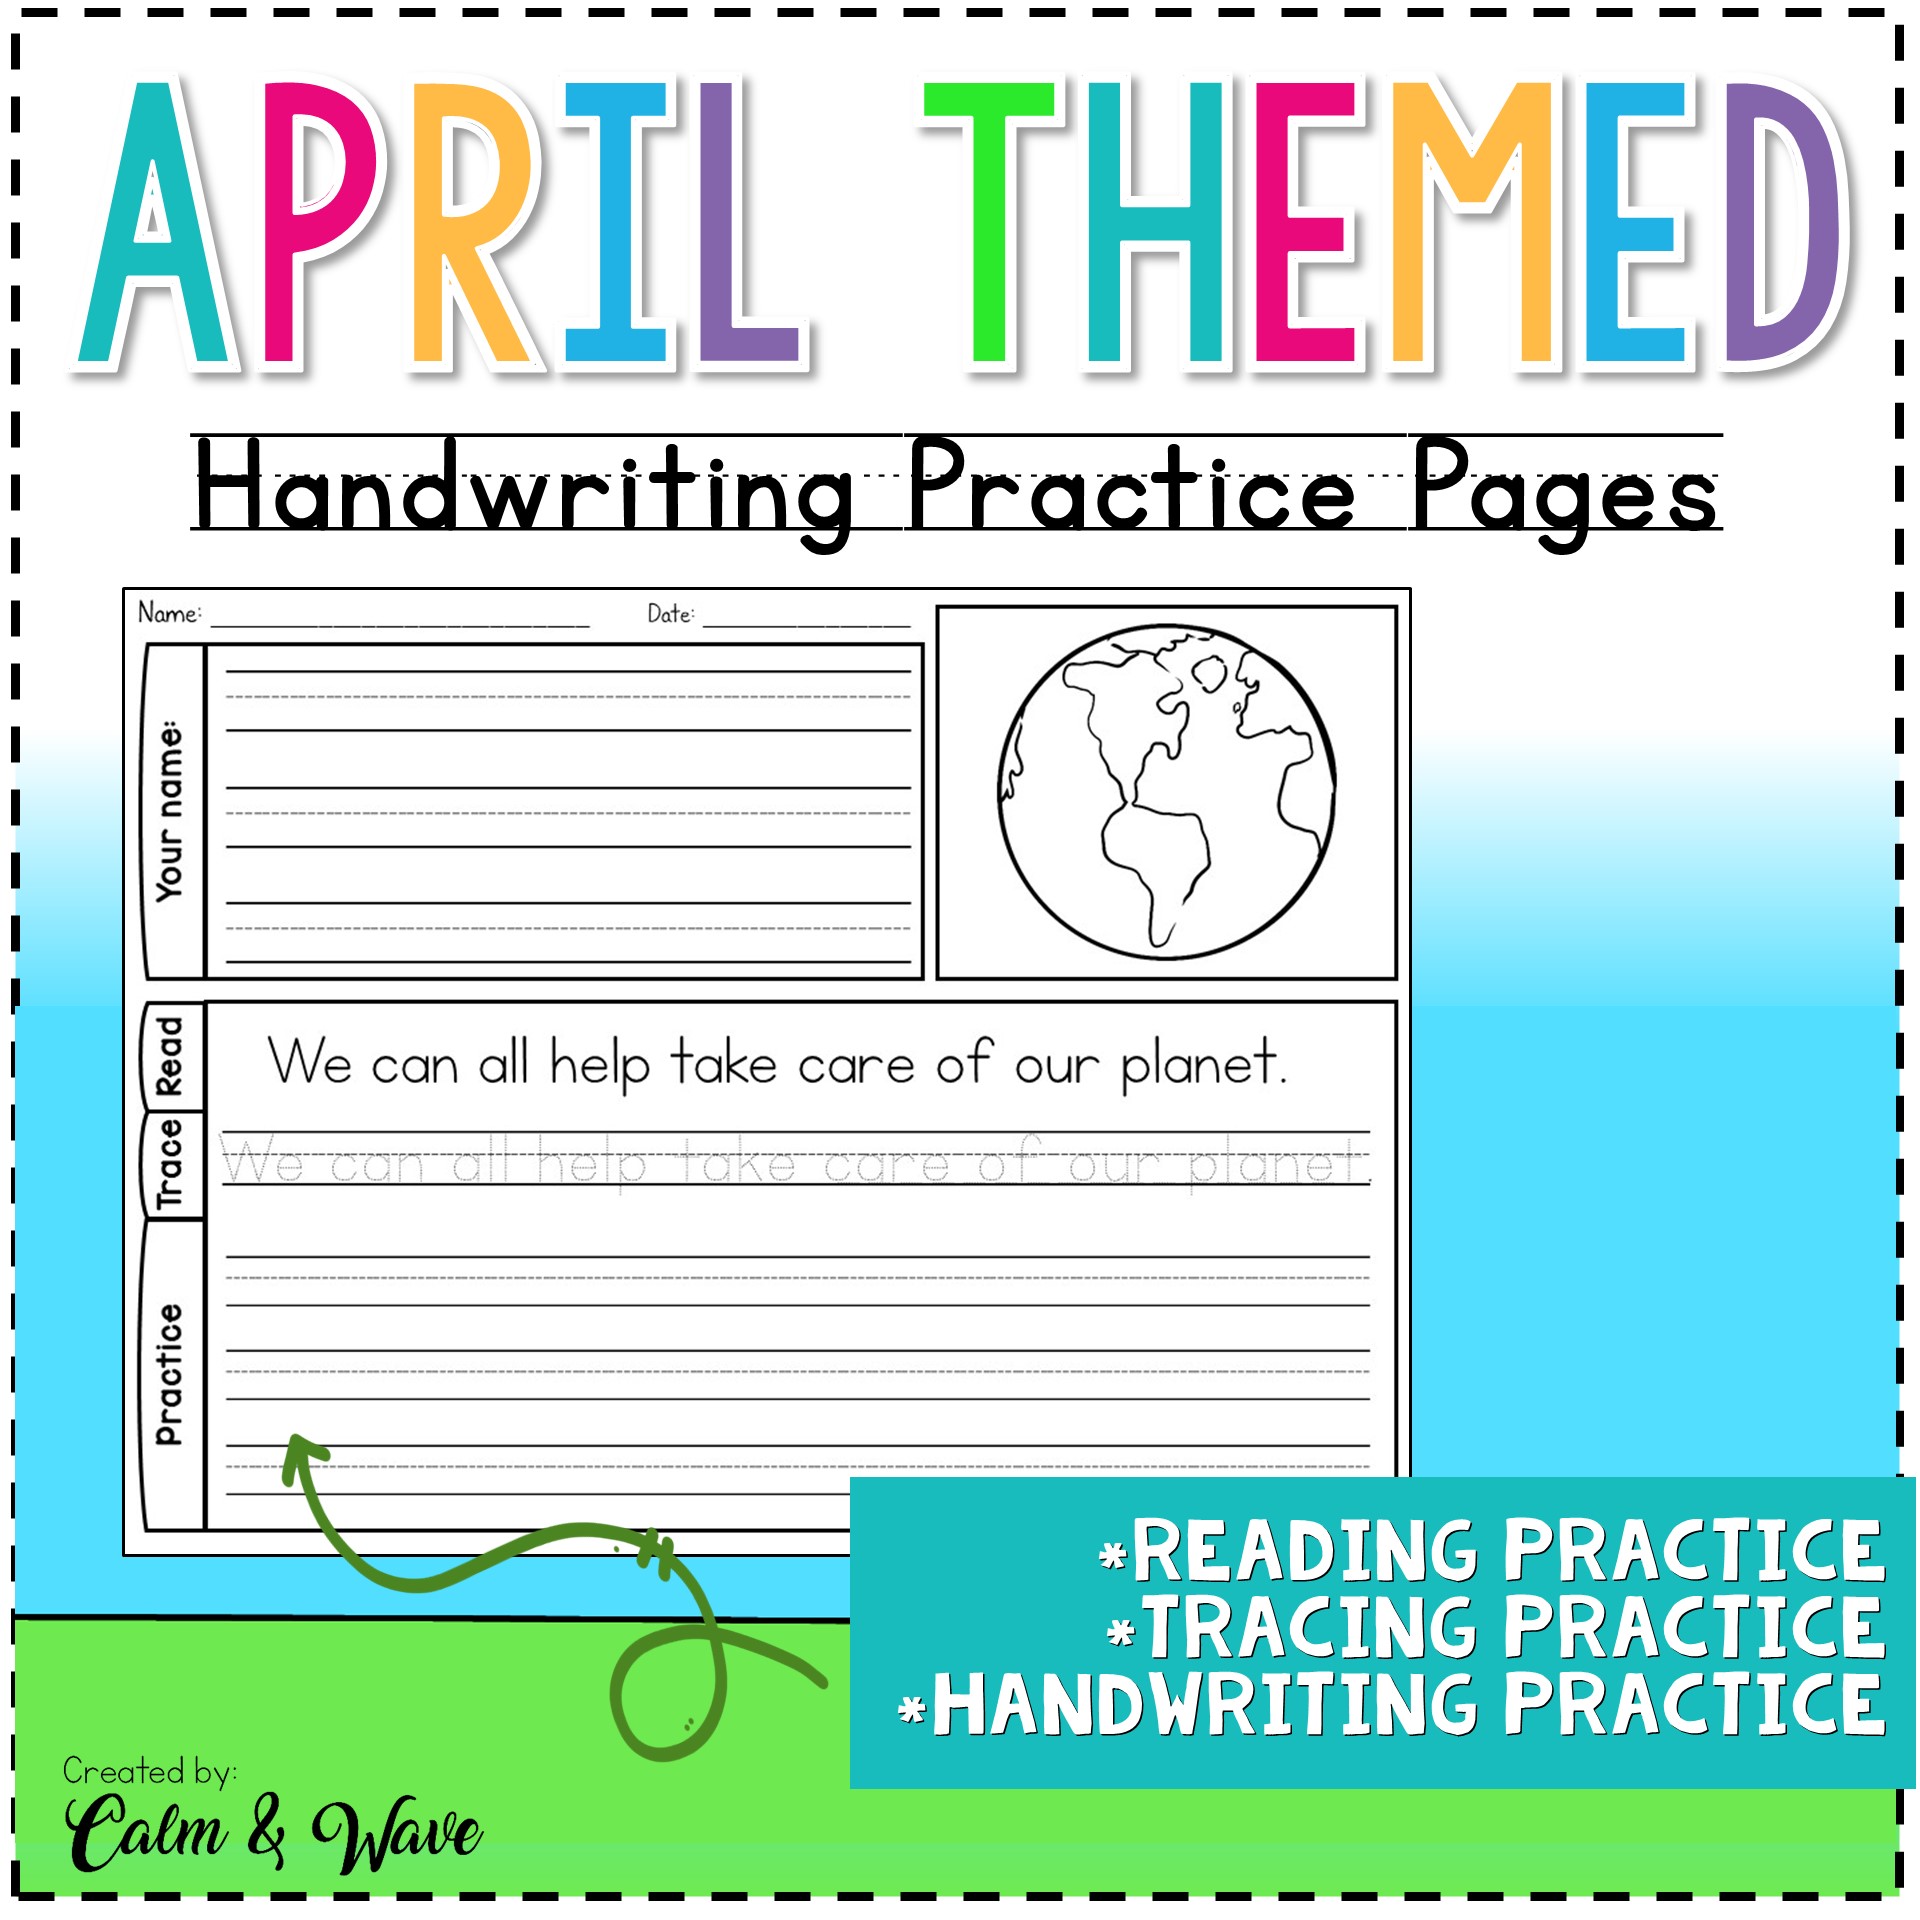 April handwriting sheets in manuscript